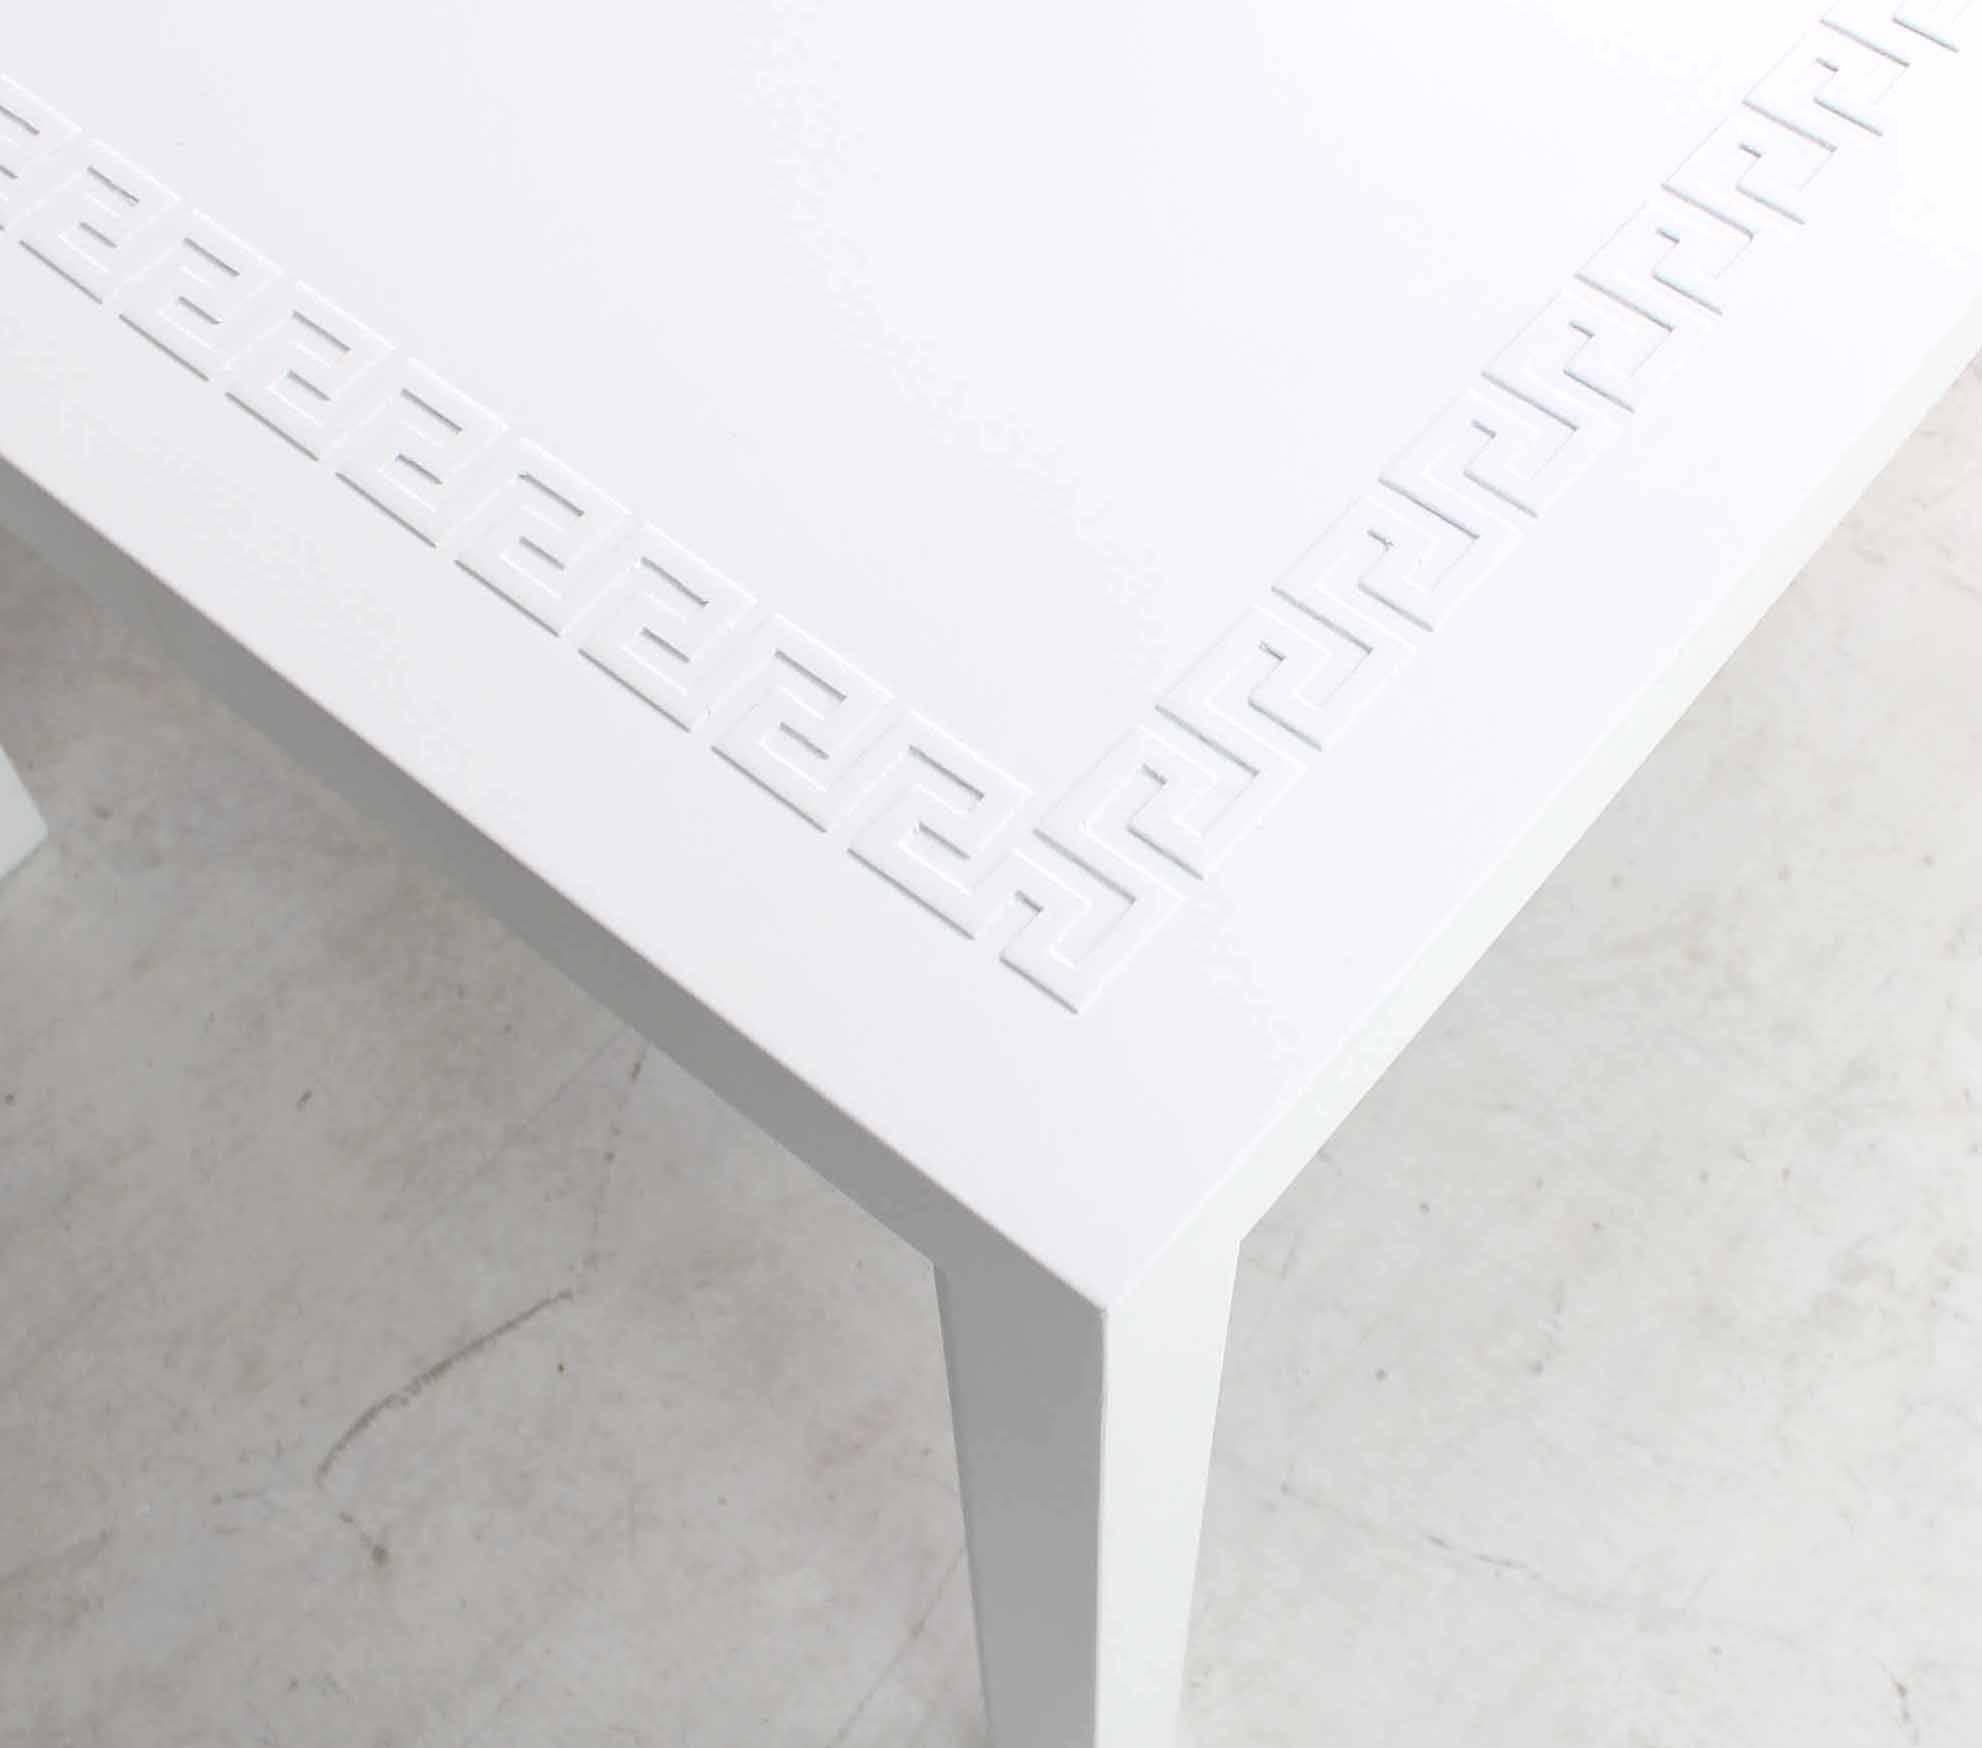 Très belle table basse ou d'appoint rectangulaire en laque blanche ornée de clés grecques.